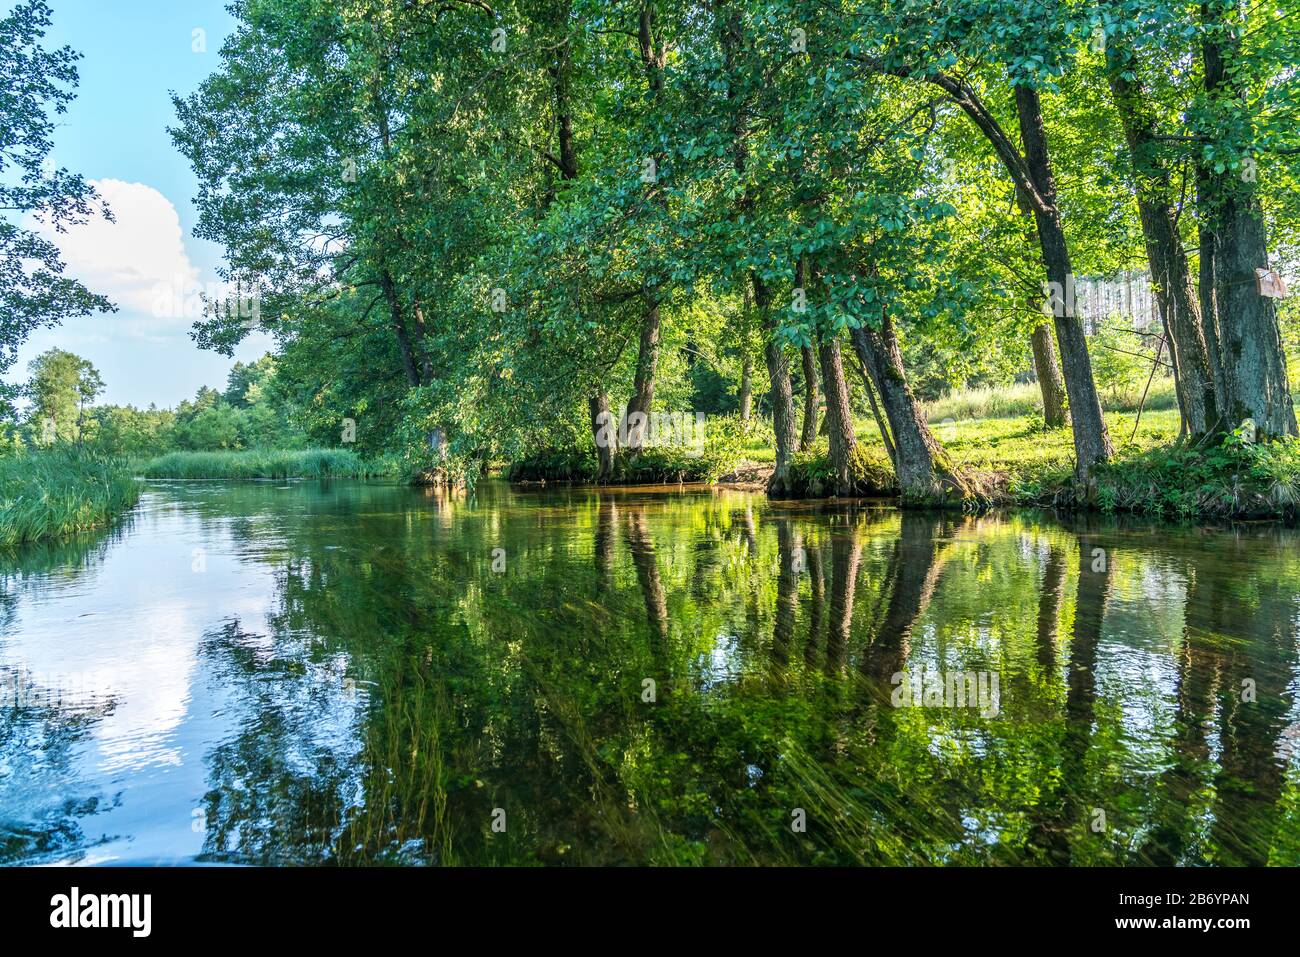 Landschaft am Fluss Czarna Hancza, bei Kanufahrern beliebter Fluss der Memel in der polnischen Wojewodschaft Podlachien, Polen, Europa Landschaftsbau Stockfoto